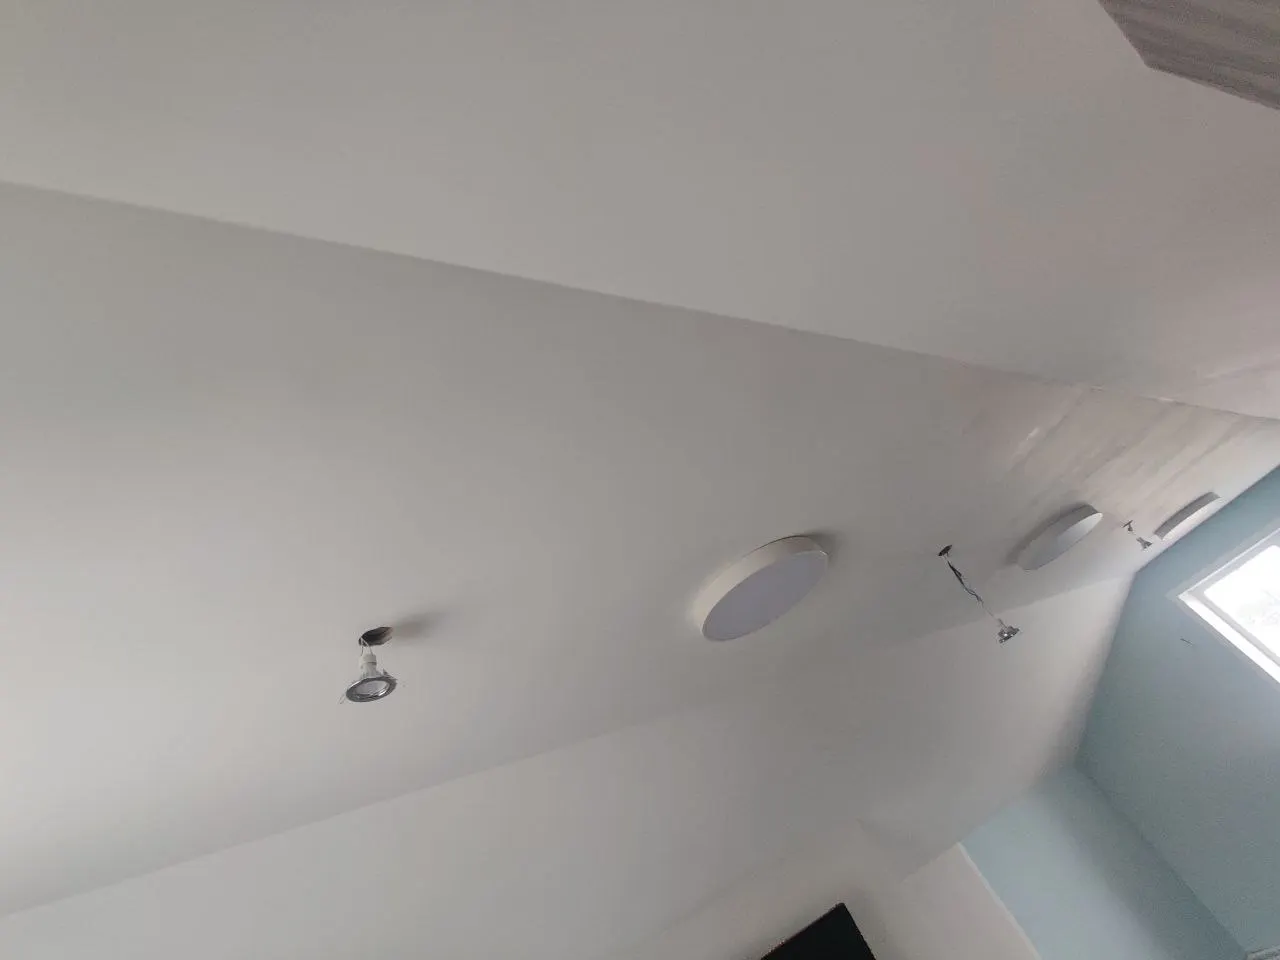 22cm 30cm 40cm Ultrathin Led Ceiling Lamp For Bedroom photo review